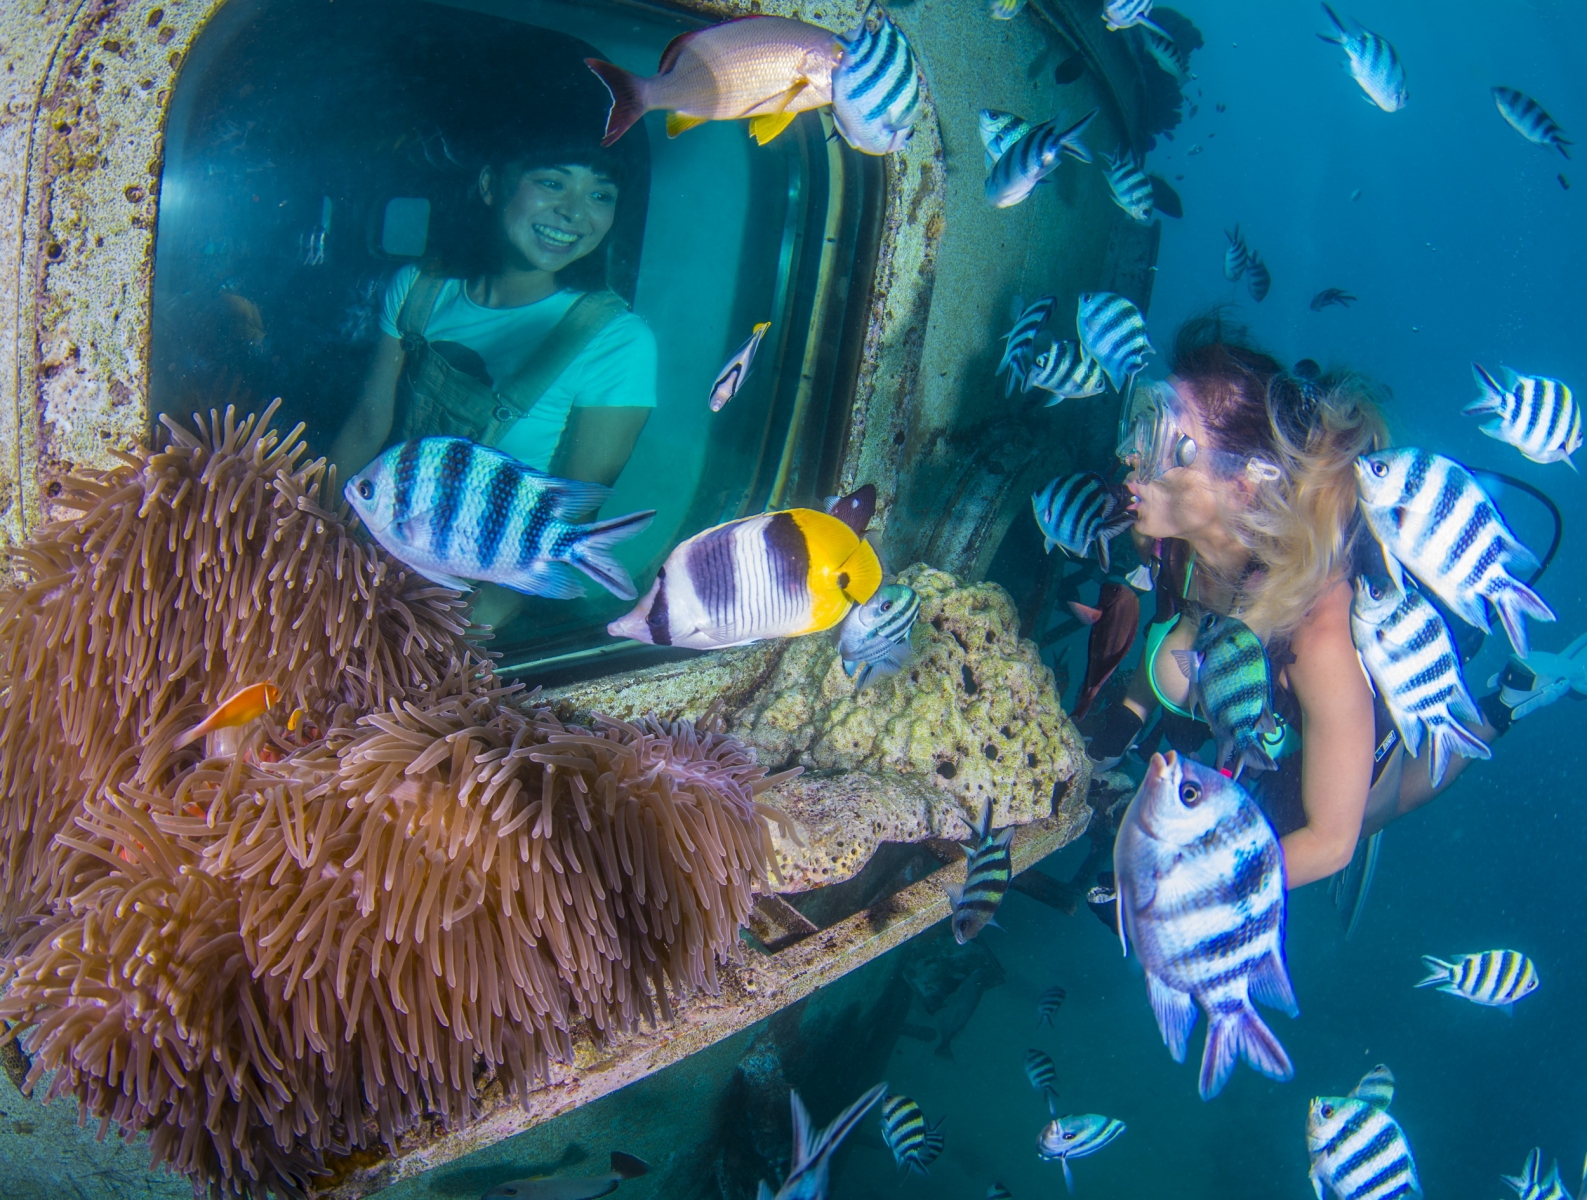 魚眼海洋公園的海底展望台往水面下延伸10公尺，四周環繞大型玻璃關景窗，可清楚看到關島海底美景與多種類熱帶魚群和各式珊瑚。